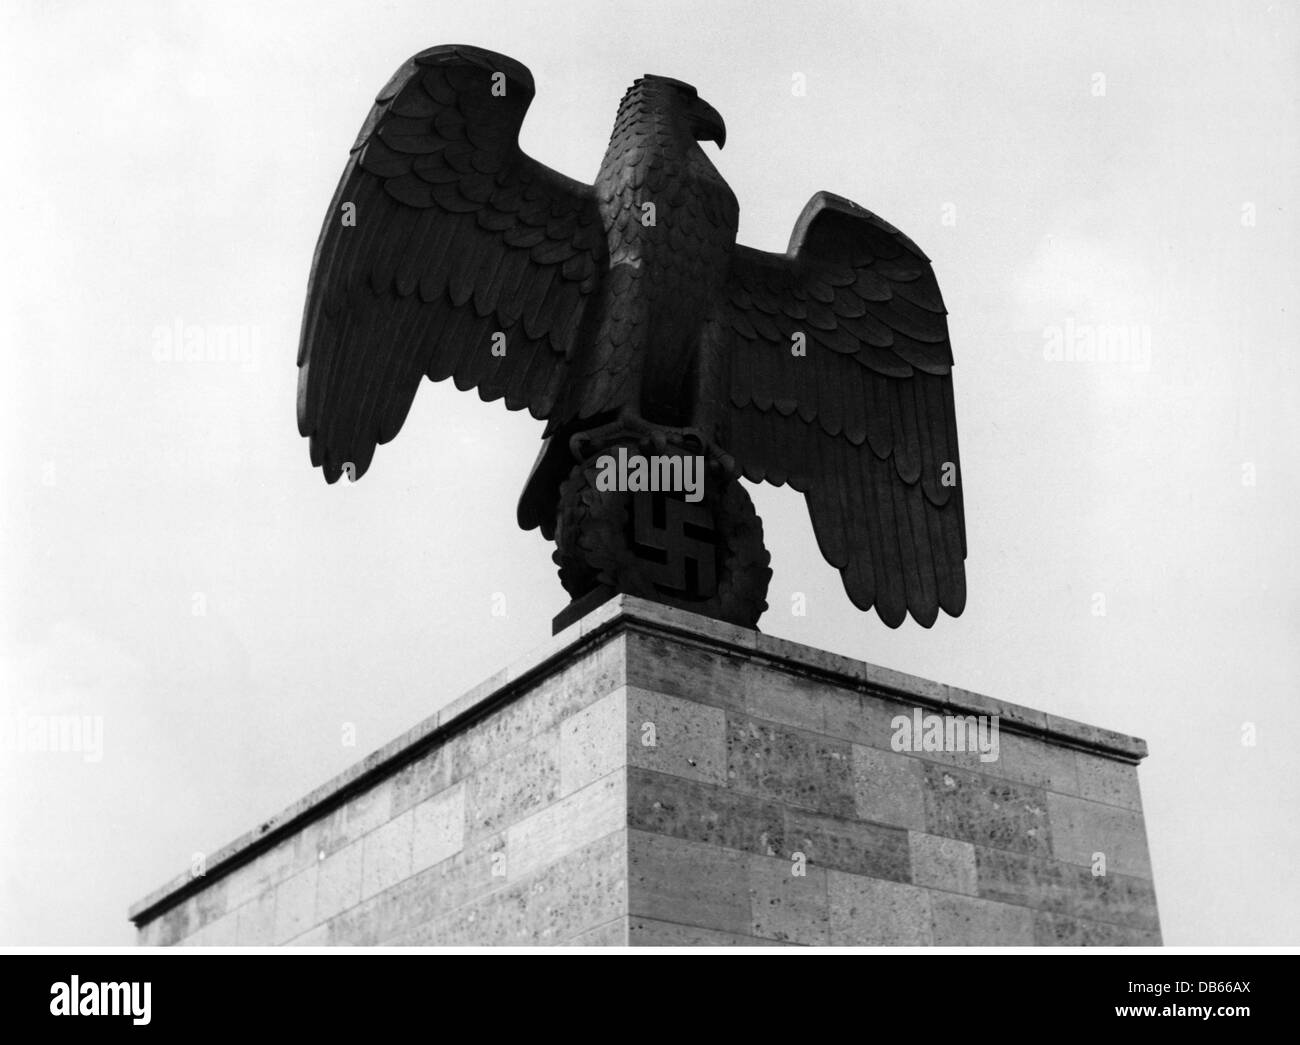 National-socialisme / nazisme, 1933 - 1945, emblèmes, Reichsadler (aigle impérial), aigle swastika sur le terrain de rassemblement du parti nazi à Nuremberg, années 1930, droits additionnels-Clearences-non disponible Banque D'Images